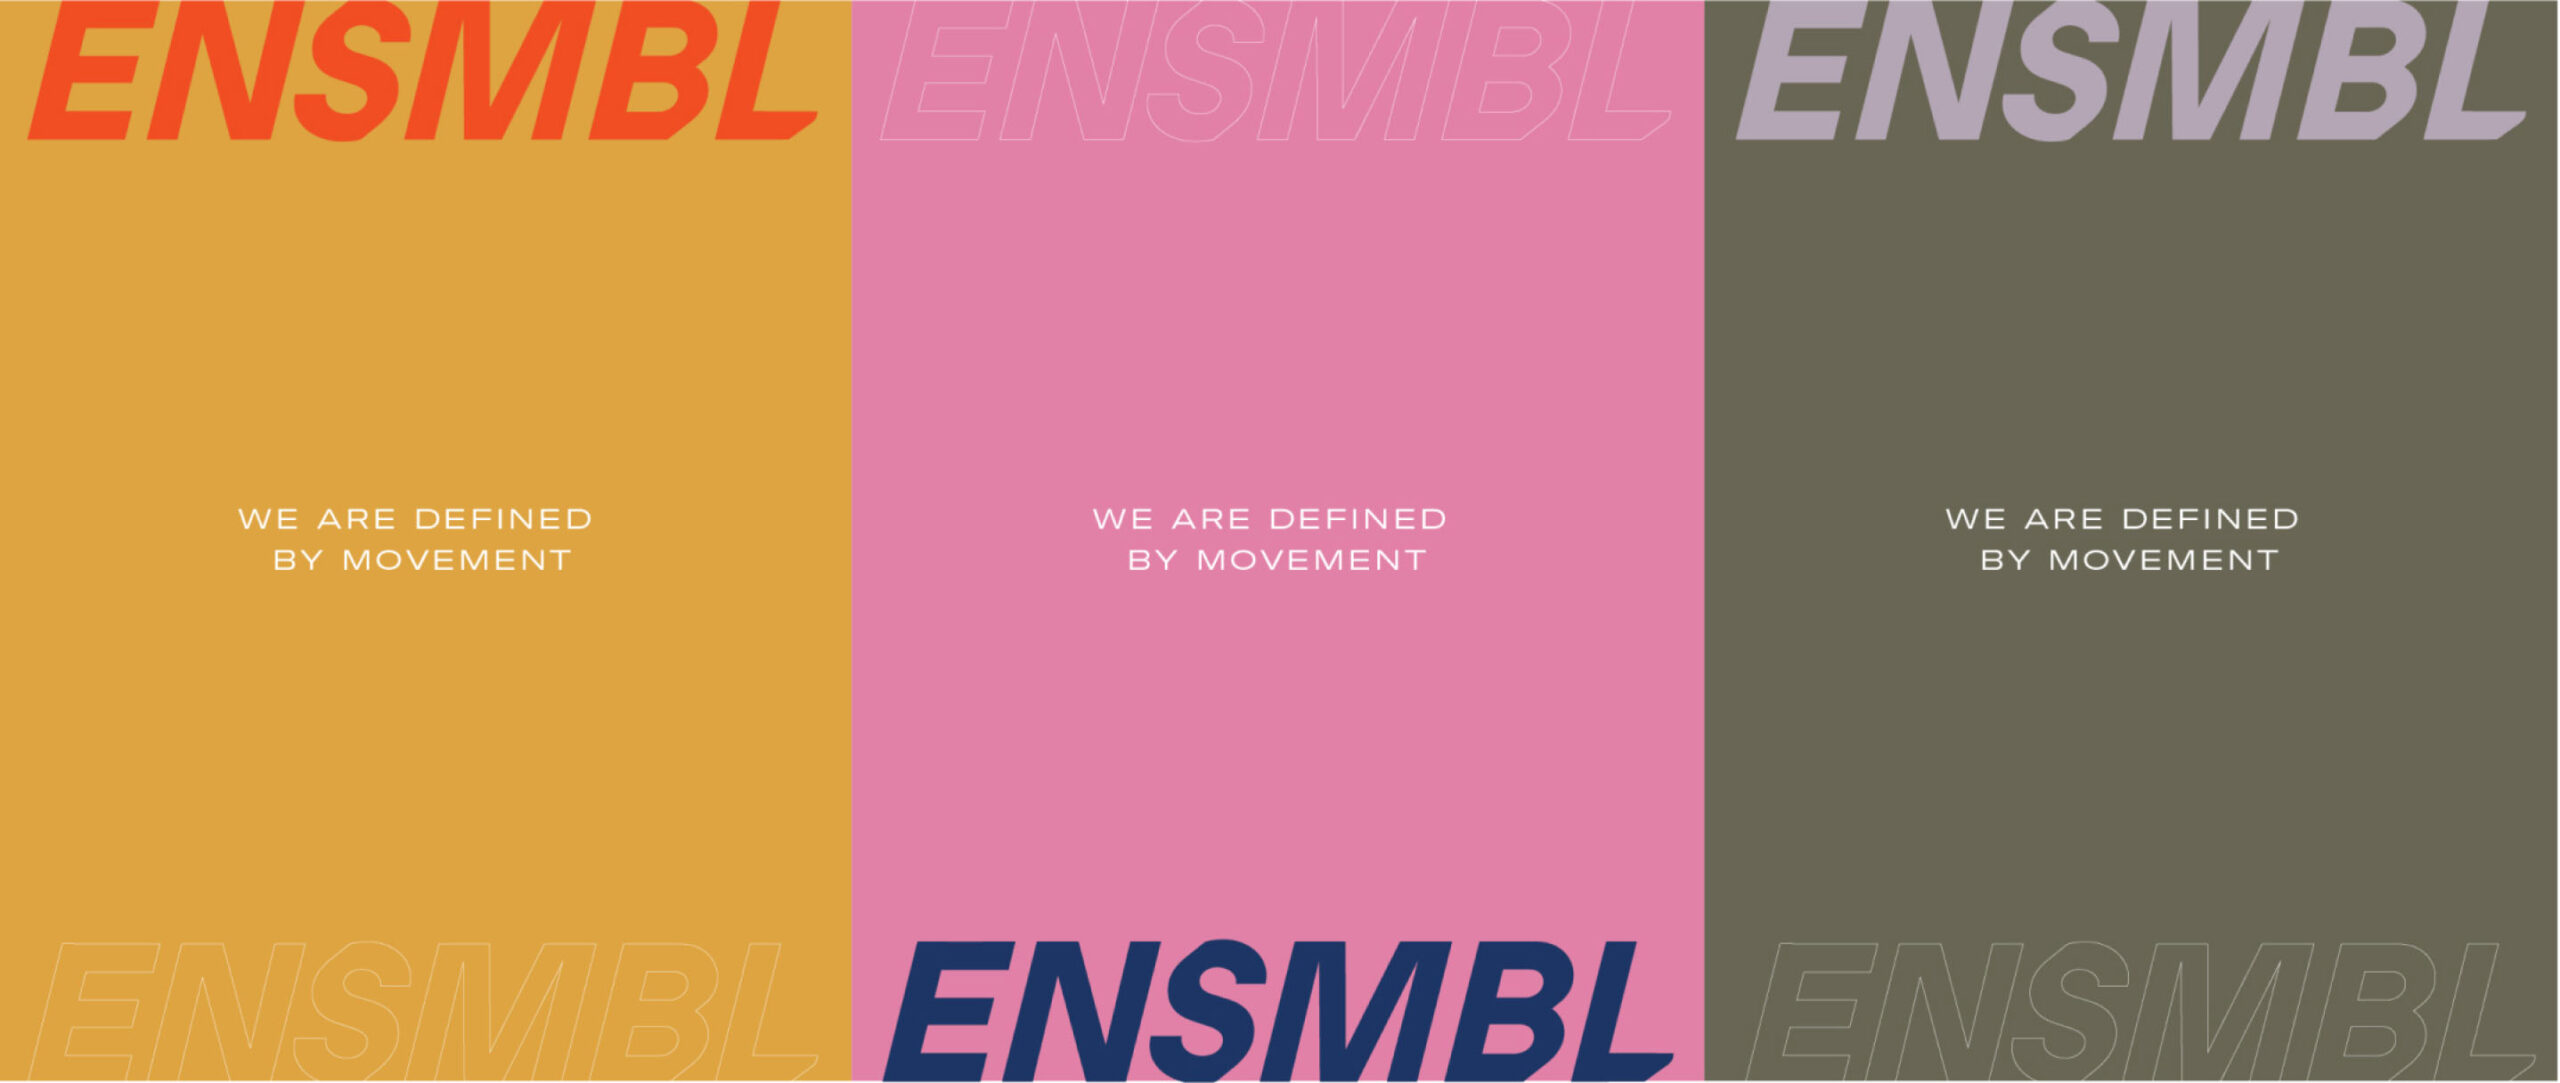 ENSMBL_Colors_2-1